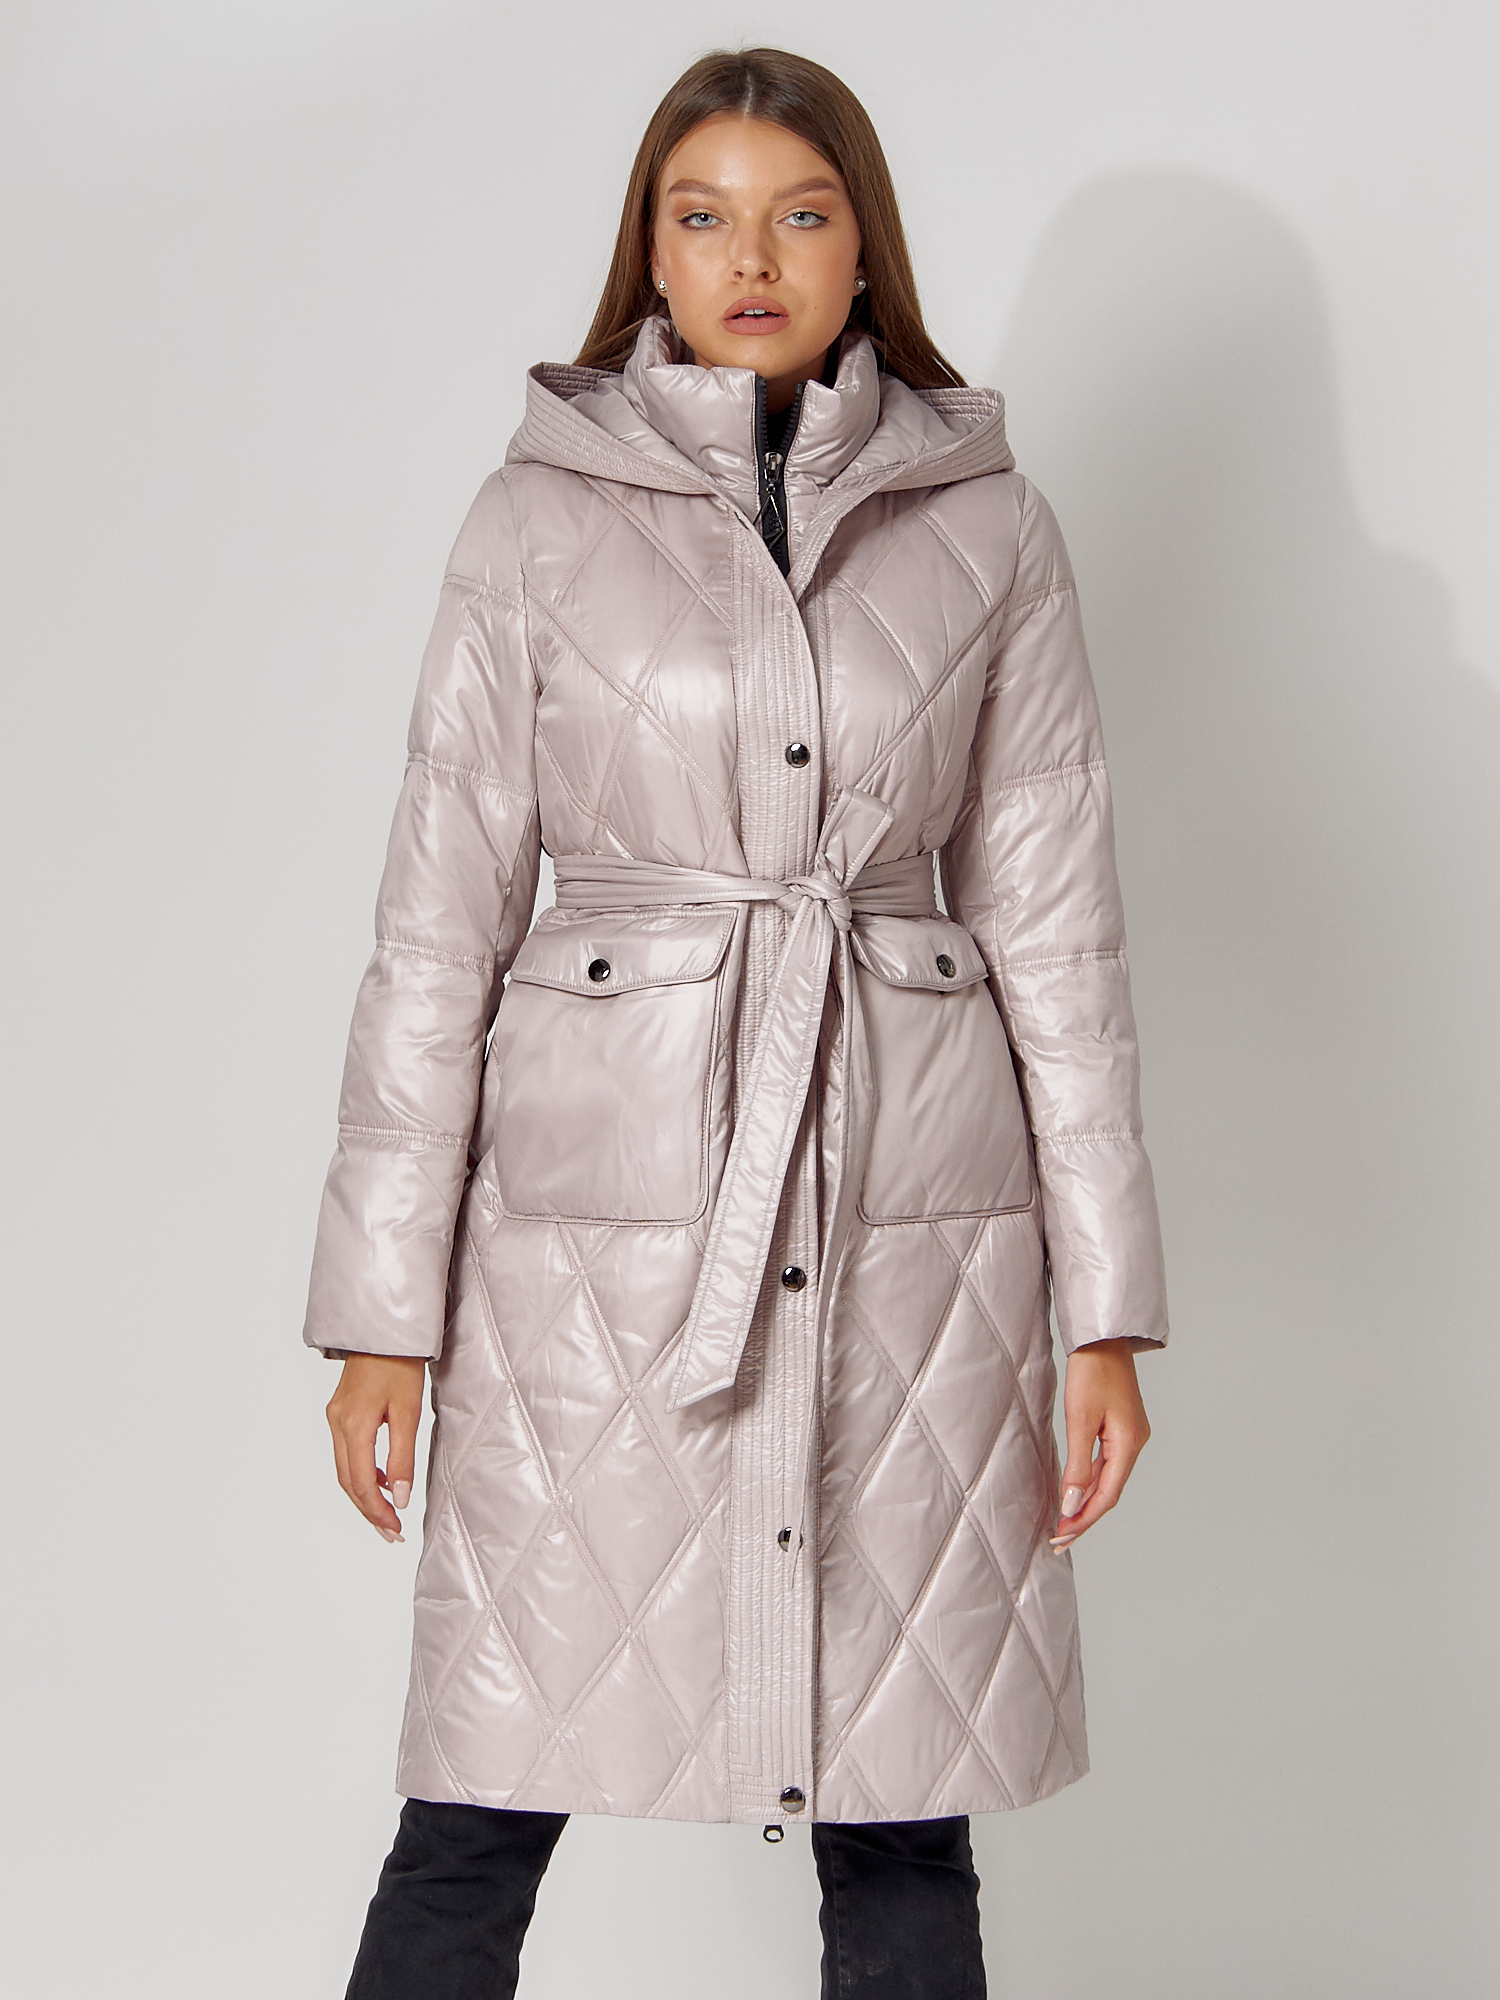 Купить Пальто утепленное стеганое зимнее женское  розового цвета 448602R